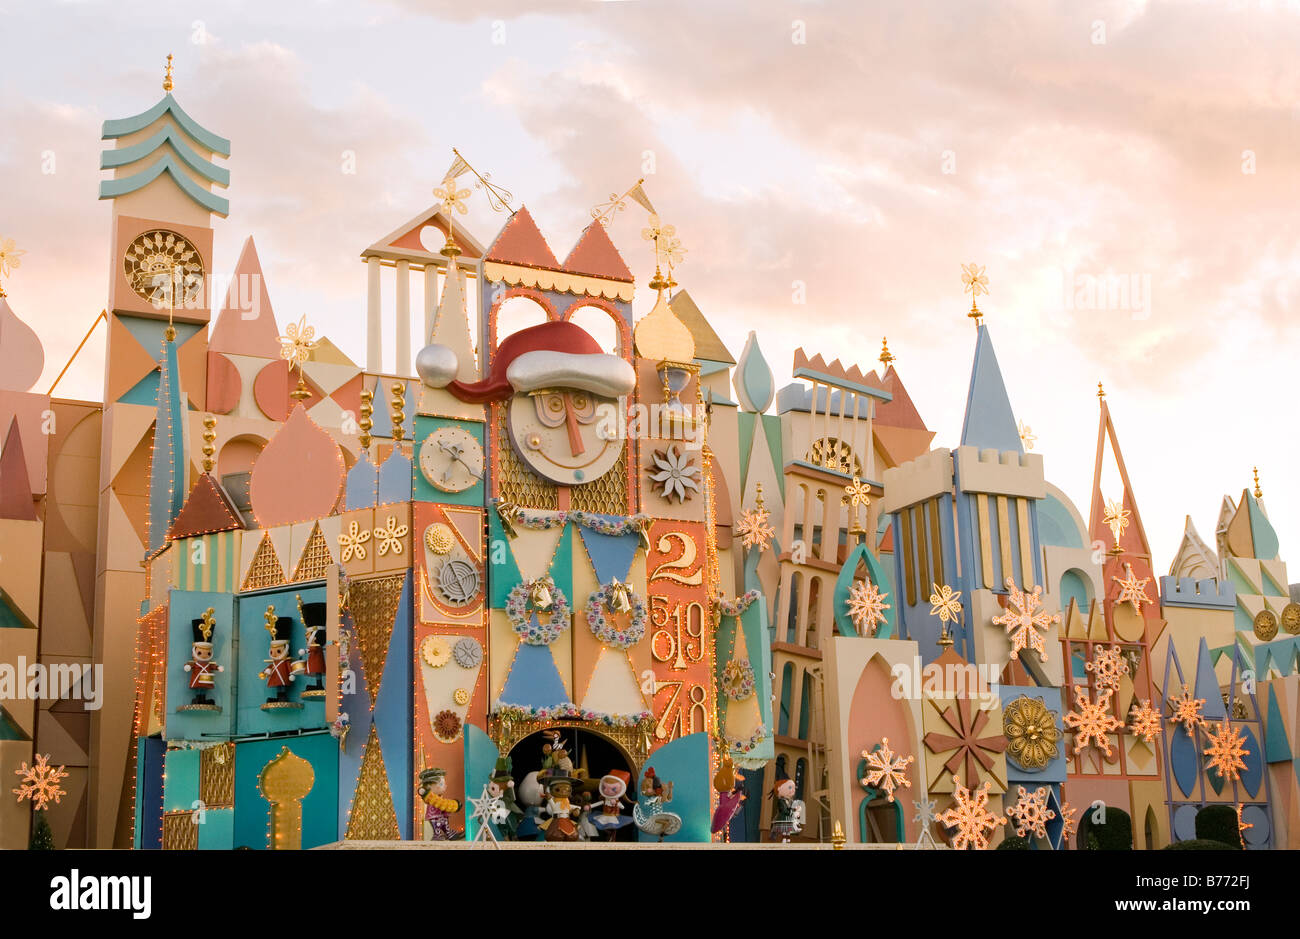 Tokyo Disneyland Stock Photo